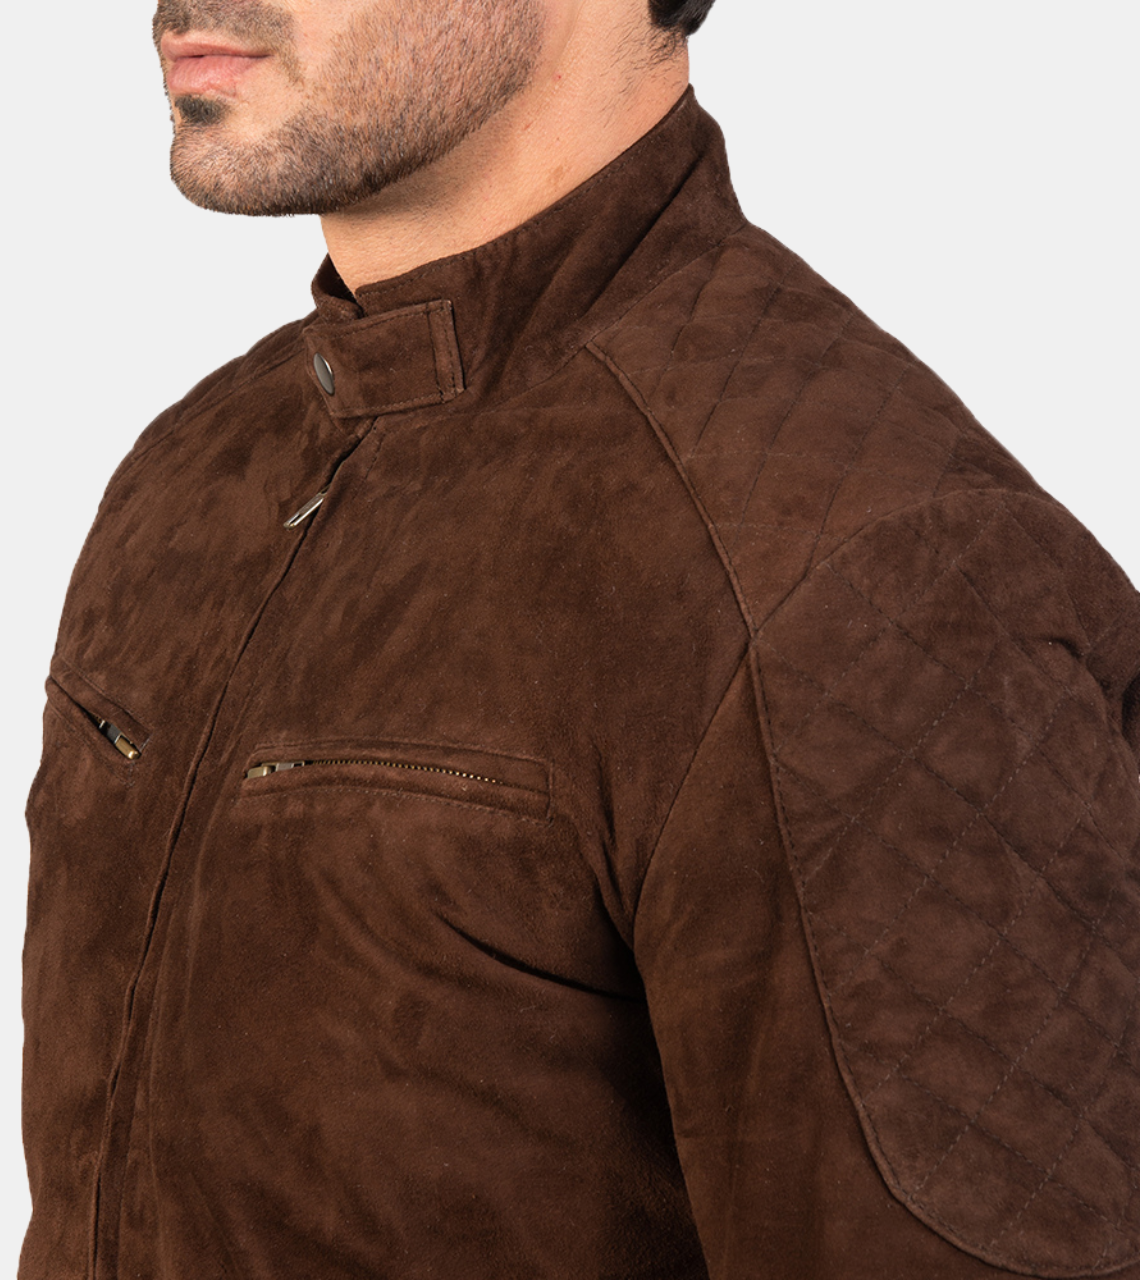 Miler Brown Bomber Suede Leather Jacket For Men's